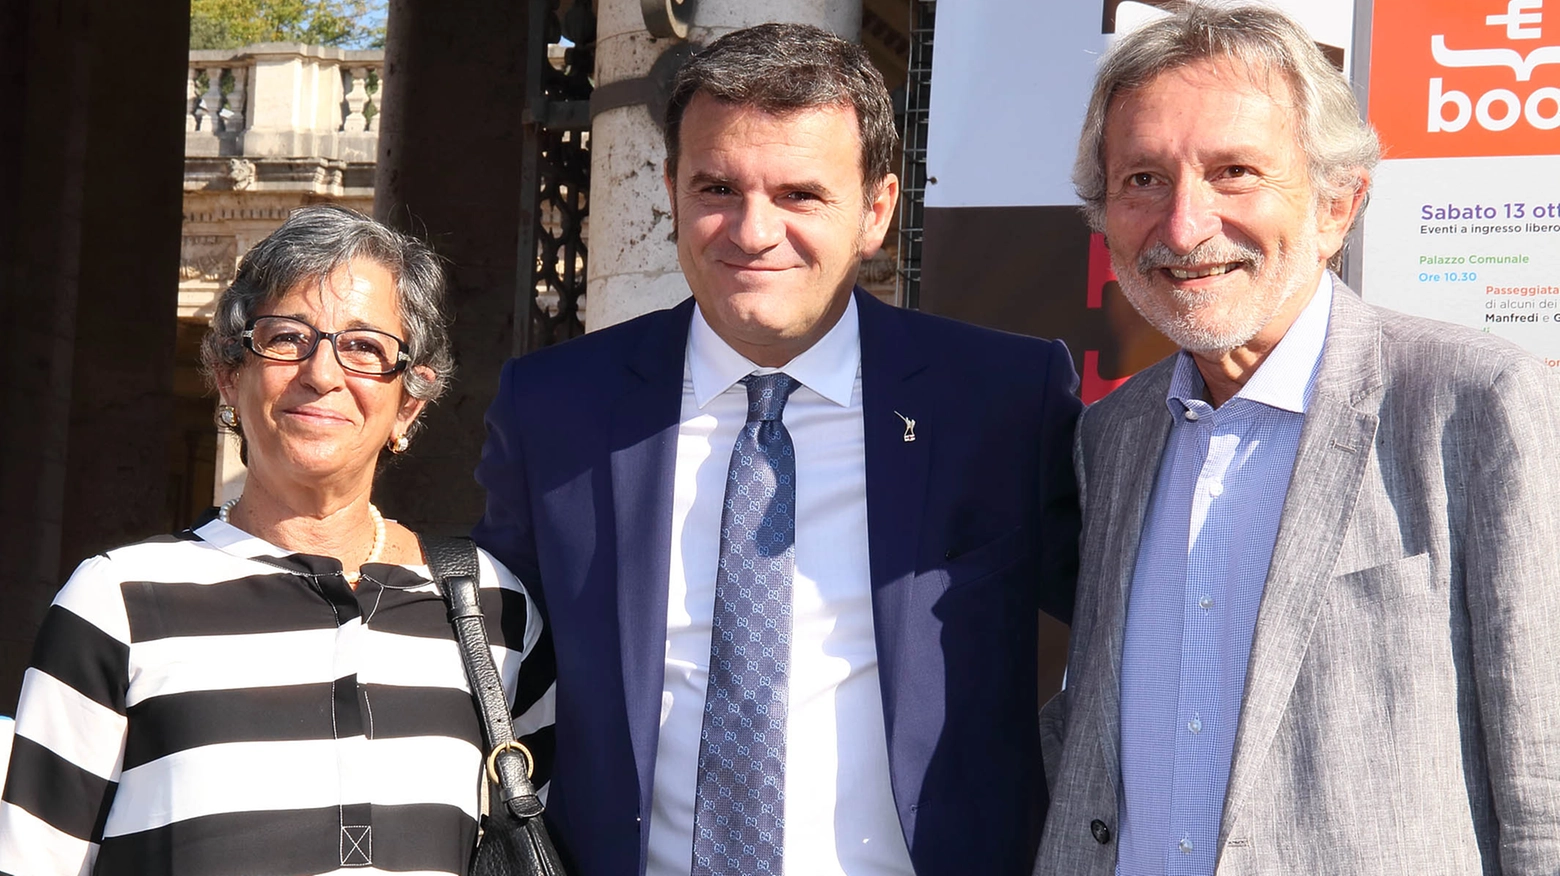 Centinaio, al centro, con il sindaco Bellandi e il consigliere regionale Bartolini